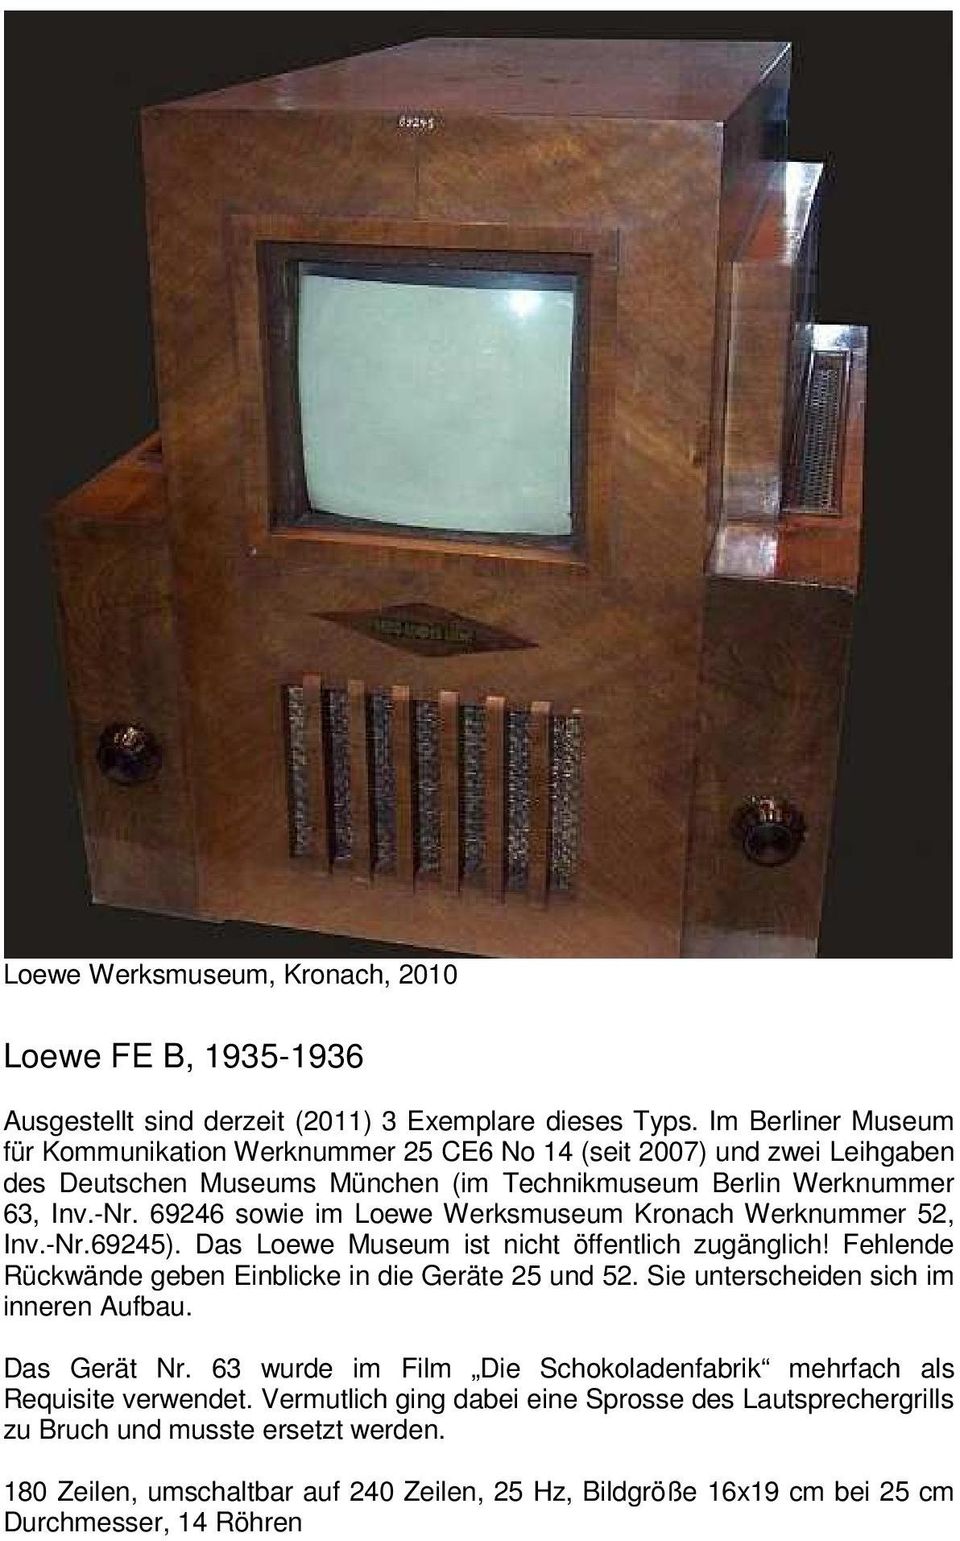 69246 sowie im Loewe Werksmuseum Kronach Werknummer 52, Inv.-Nr.69245). Das Loewe Museum ist nicht öffentlich zugänglich! Fehlende Rückwände geben Einblicke in die Geräte 25 und 52.